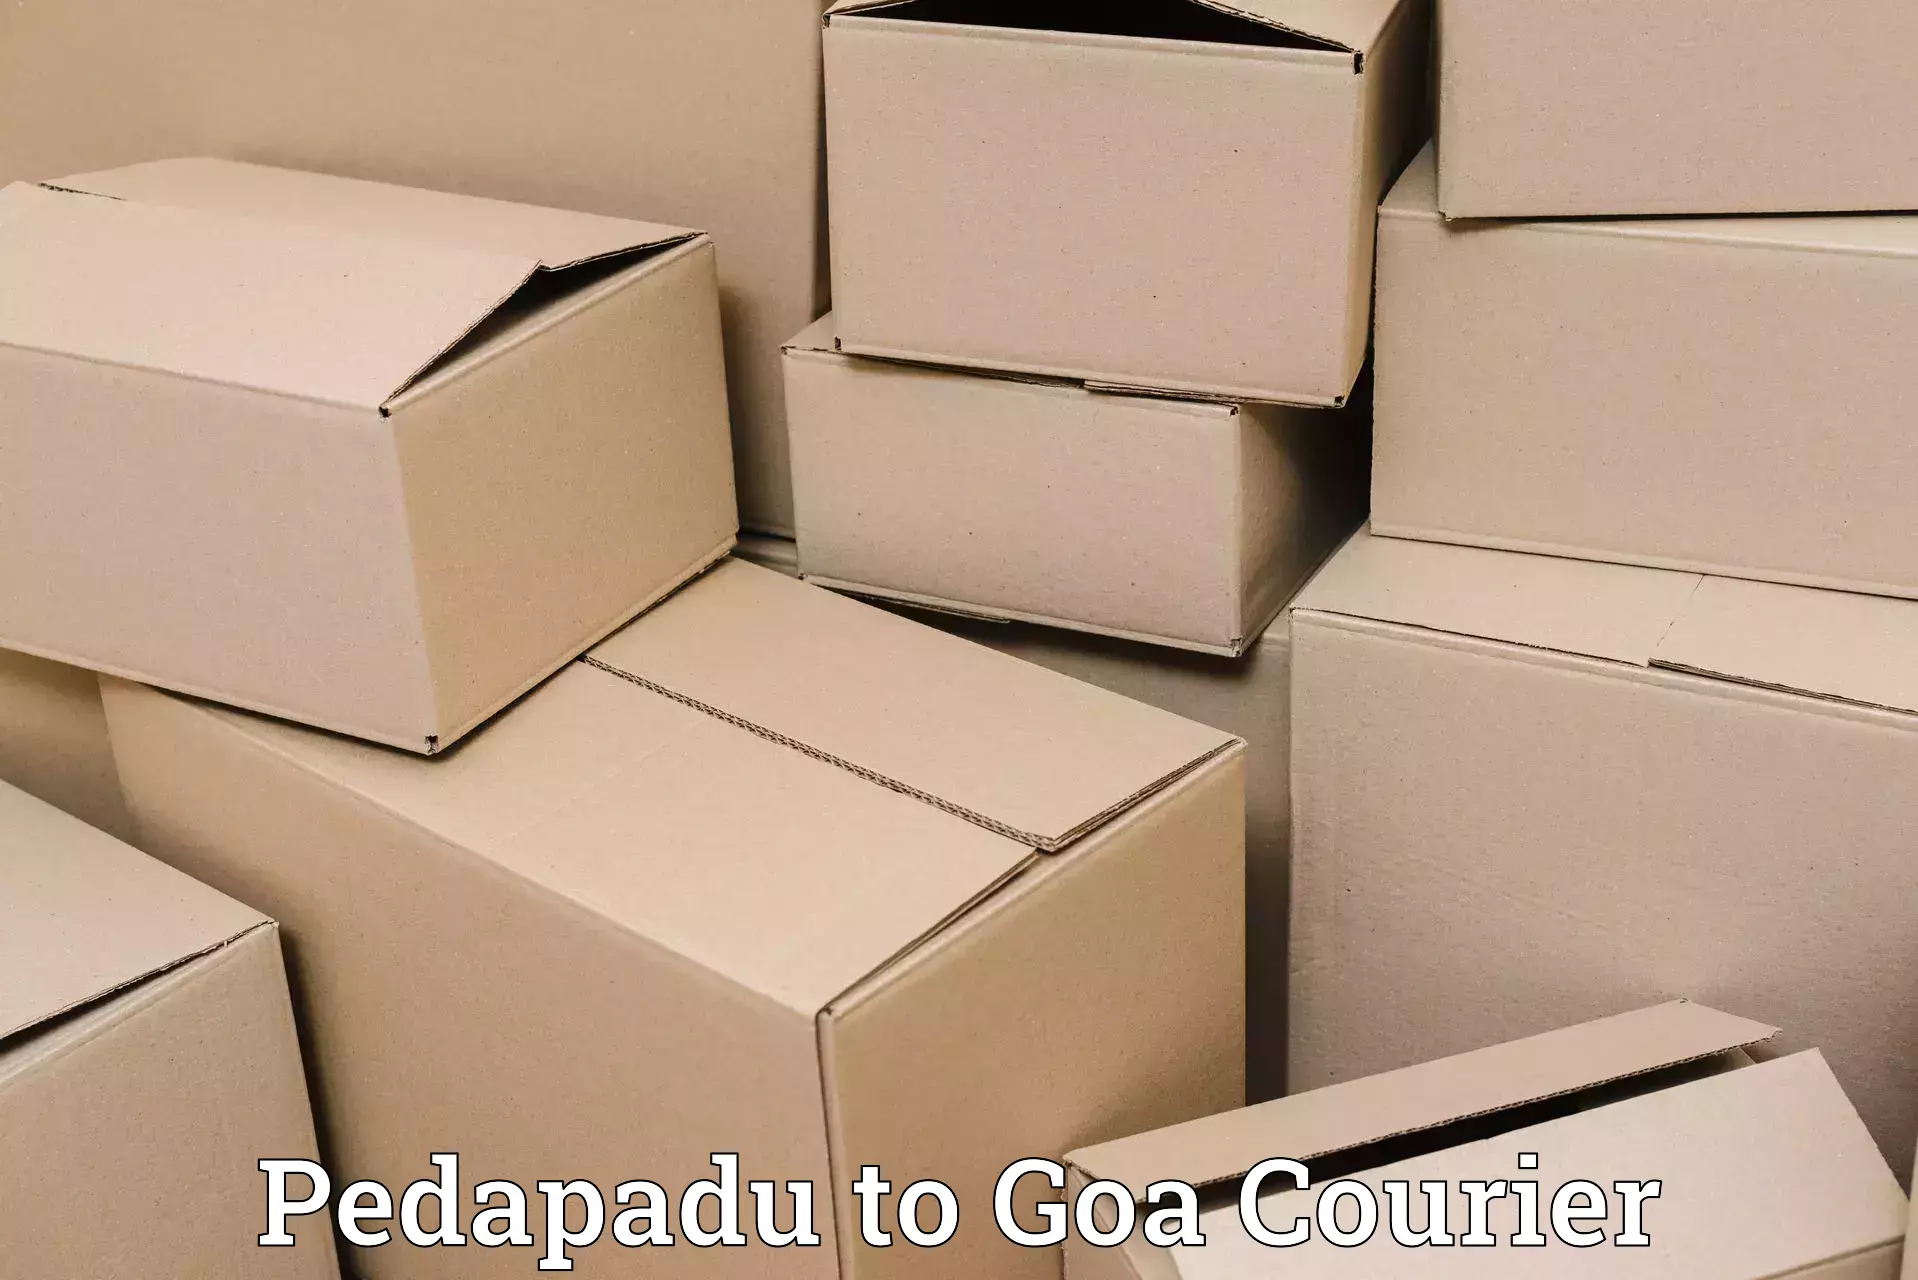 Affordable parcel rates Pedapadu to Panaji